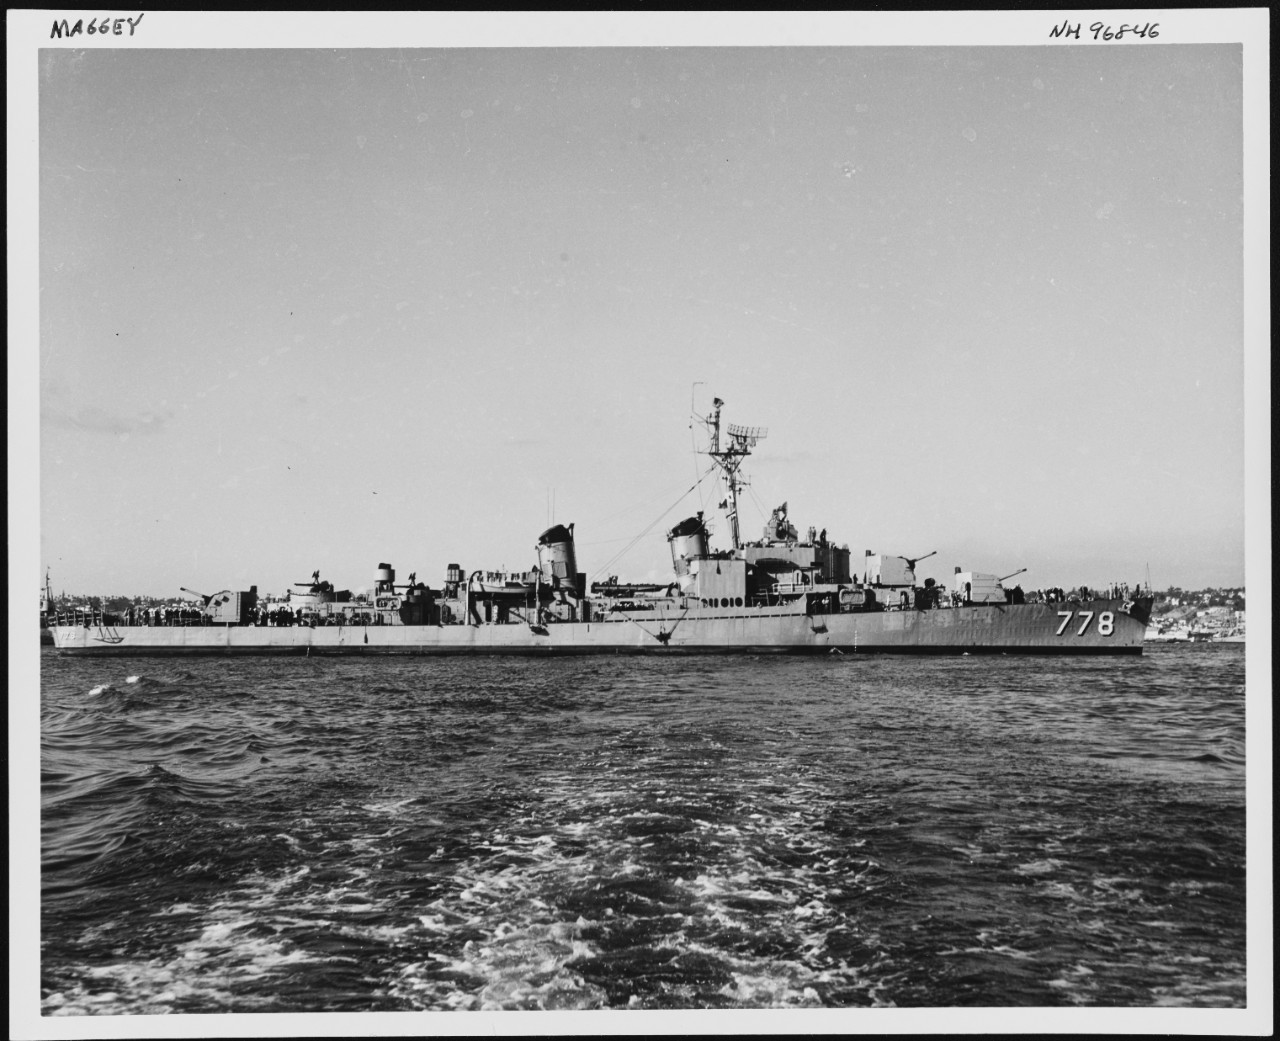 Photo #: NH 96846 USS Massey (DD-778)